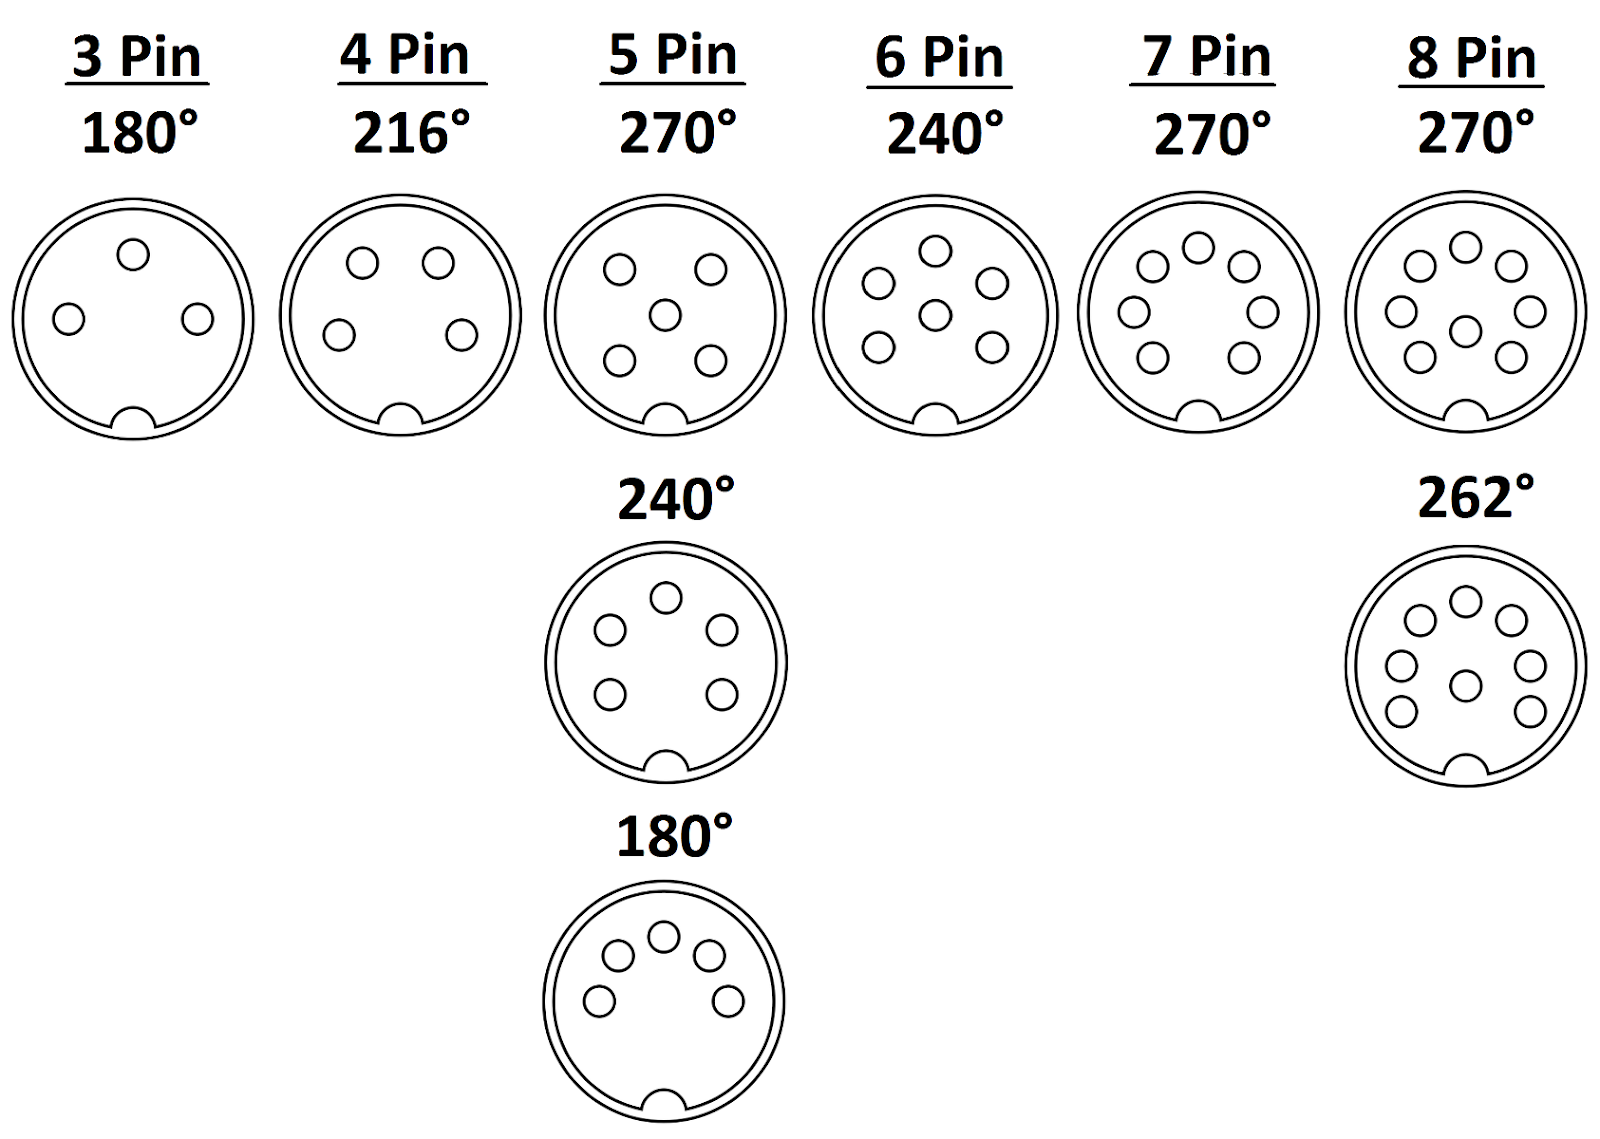 DIN cable connector
3-pin, 4-pin, 5-pin, 6-pin, 7-pin, 8-pin
degree
180, 216, 240, 262, 270